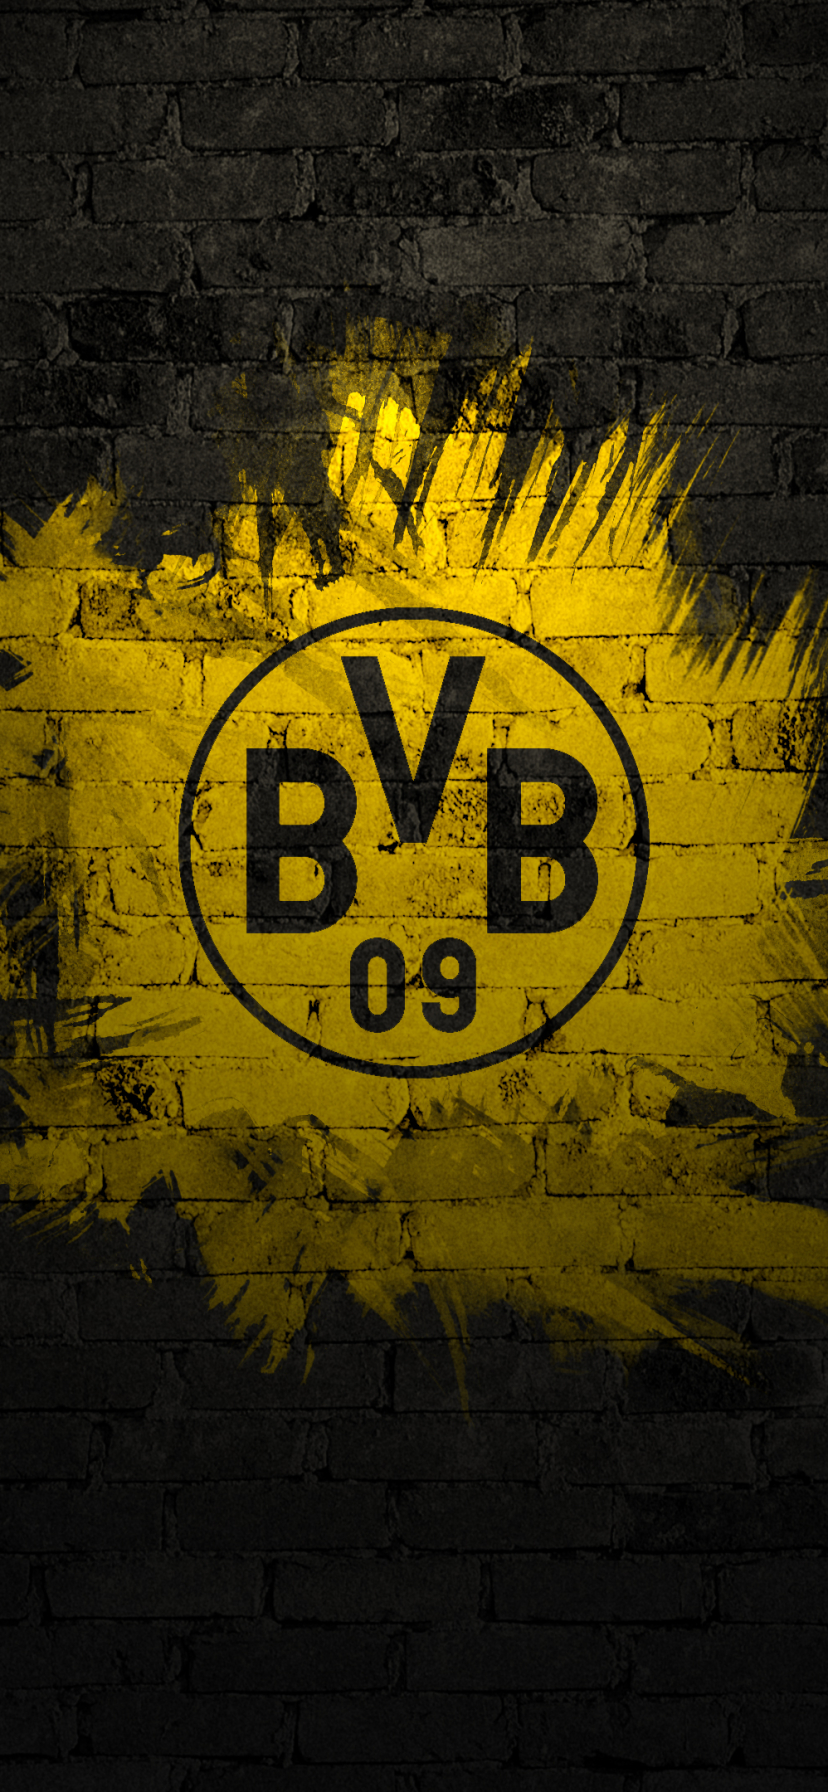 Baixar papel de parede para celular de Esportes, Futebol, Bvb, Borussia Dortmund gratuito.